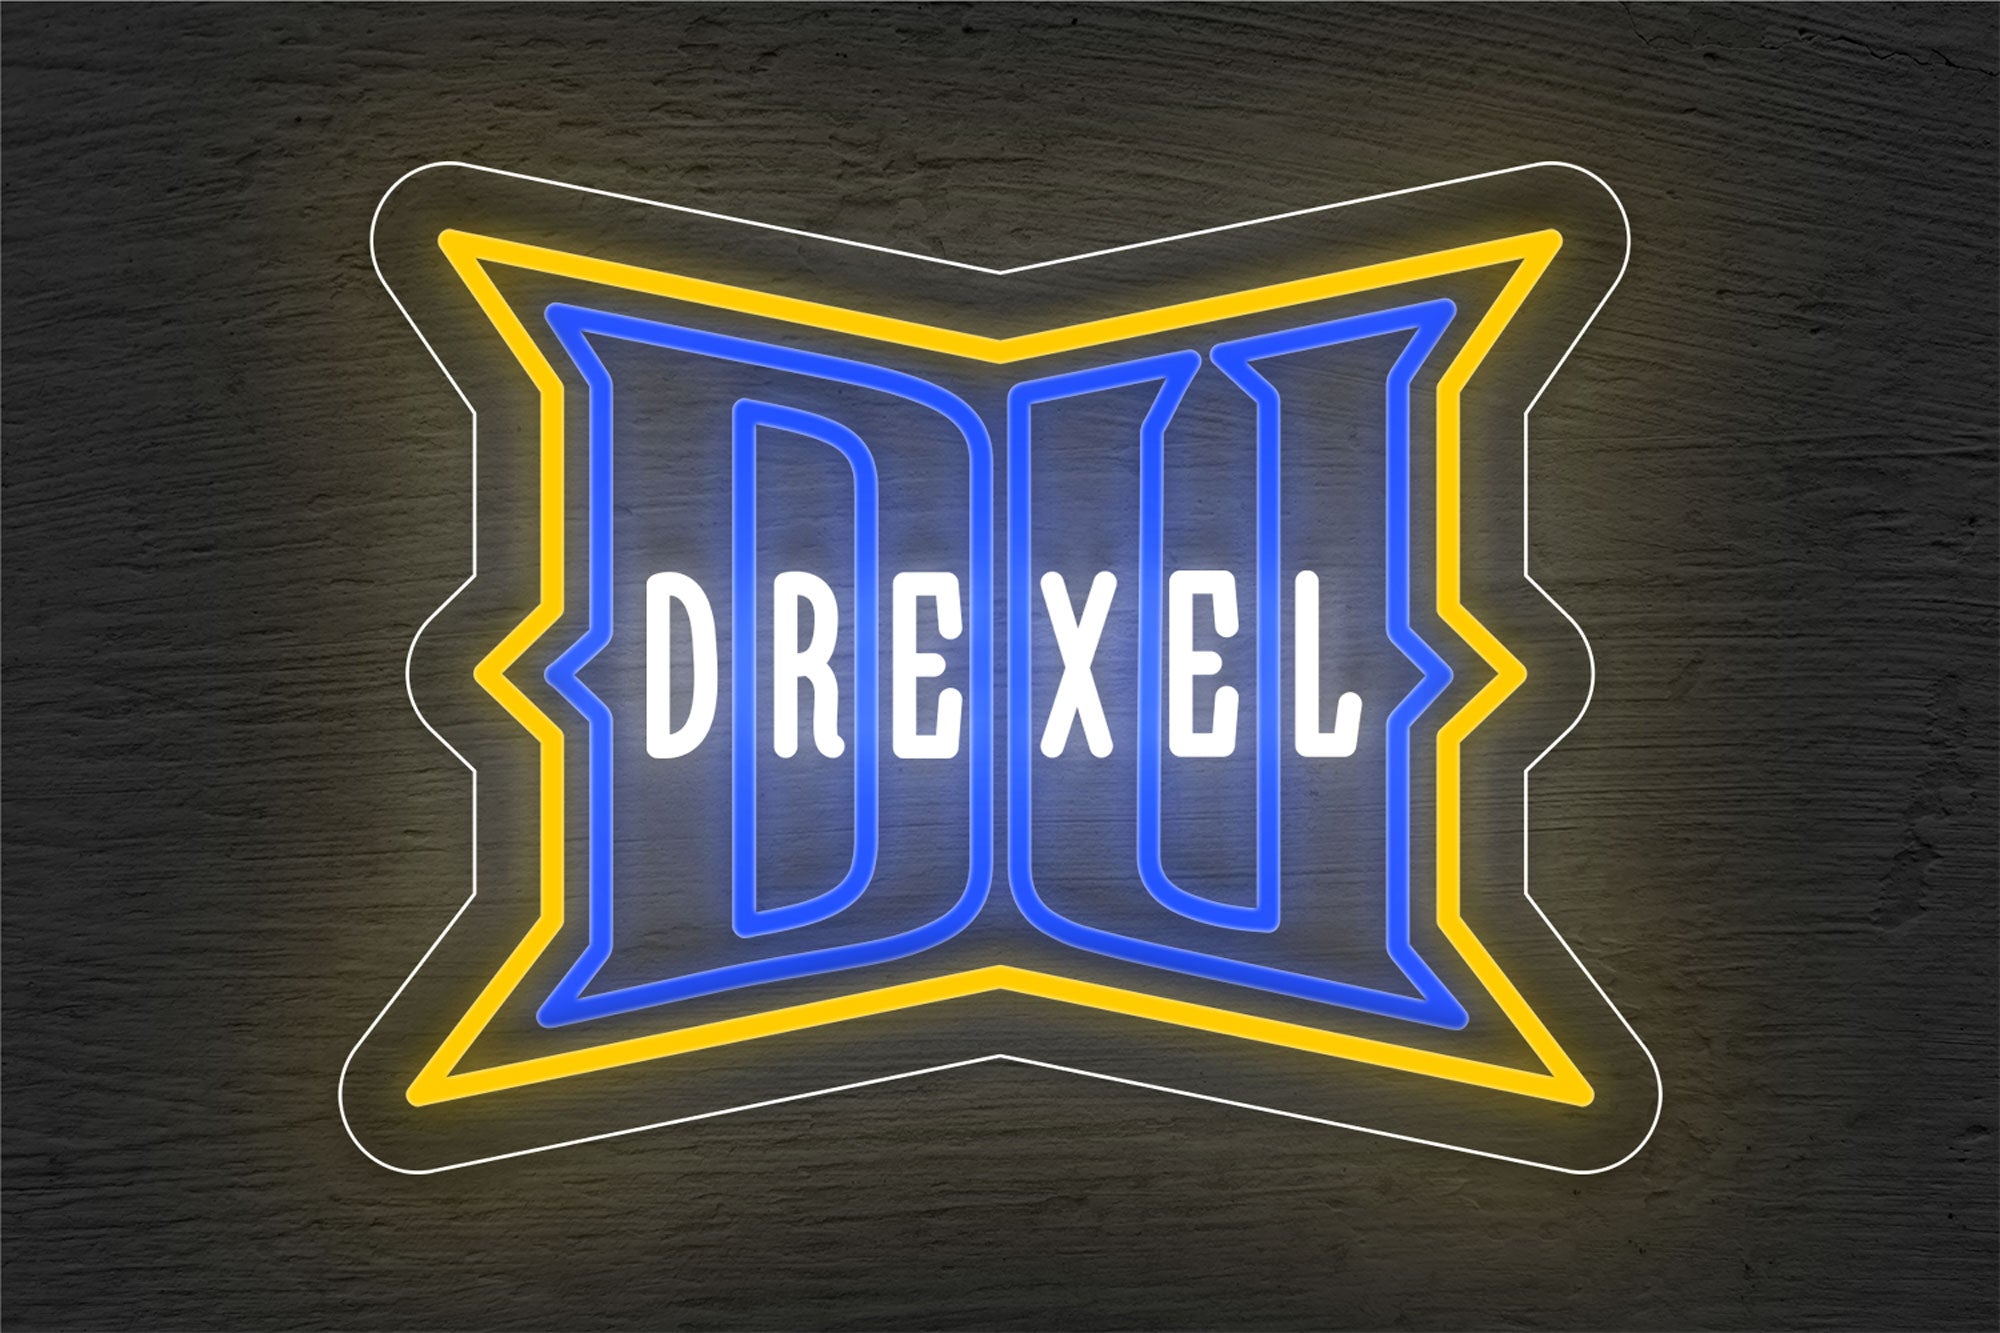 Drexel Dragons Men's Basketball LED Neon Sign